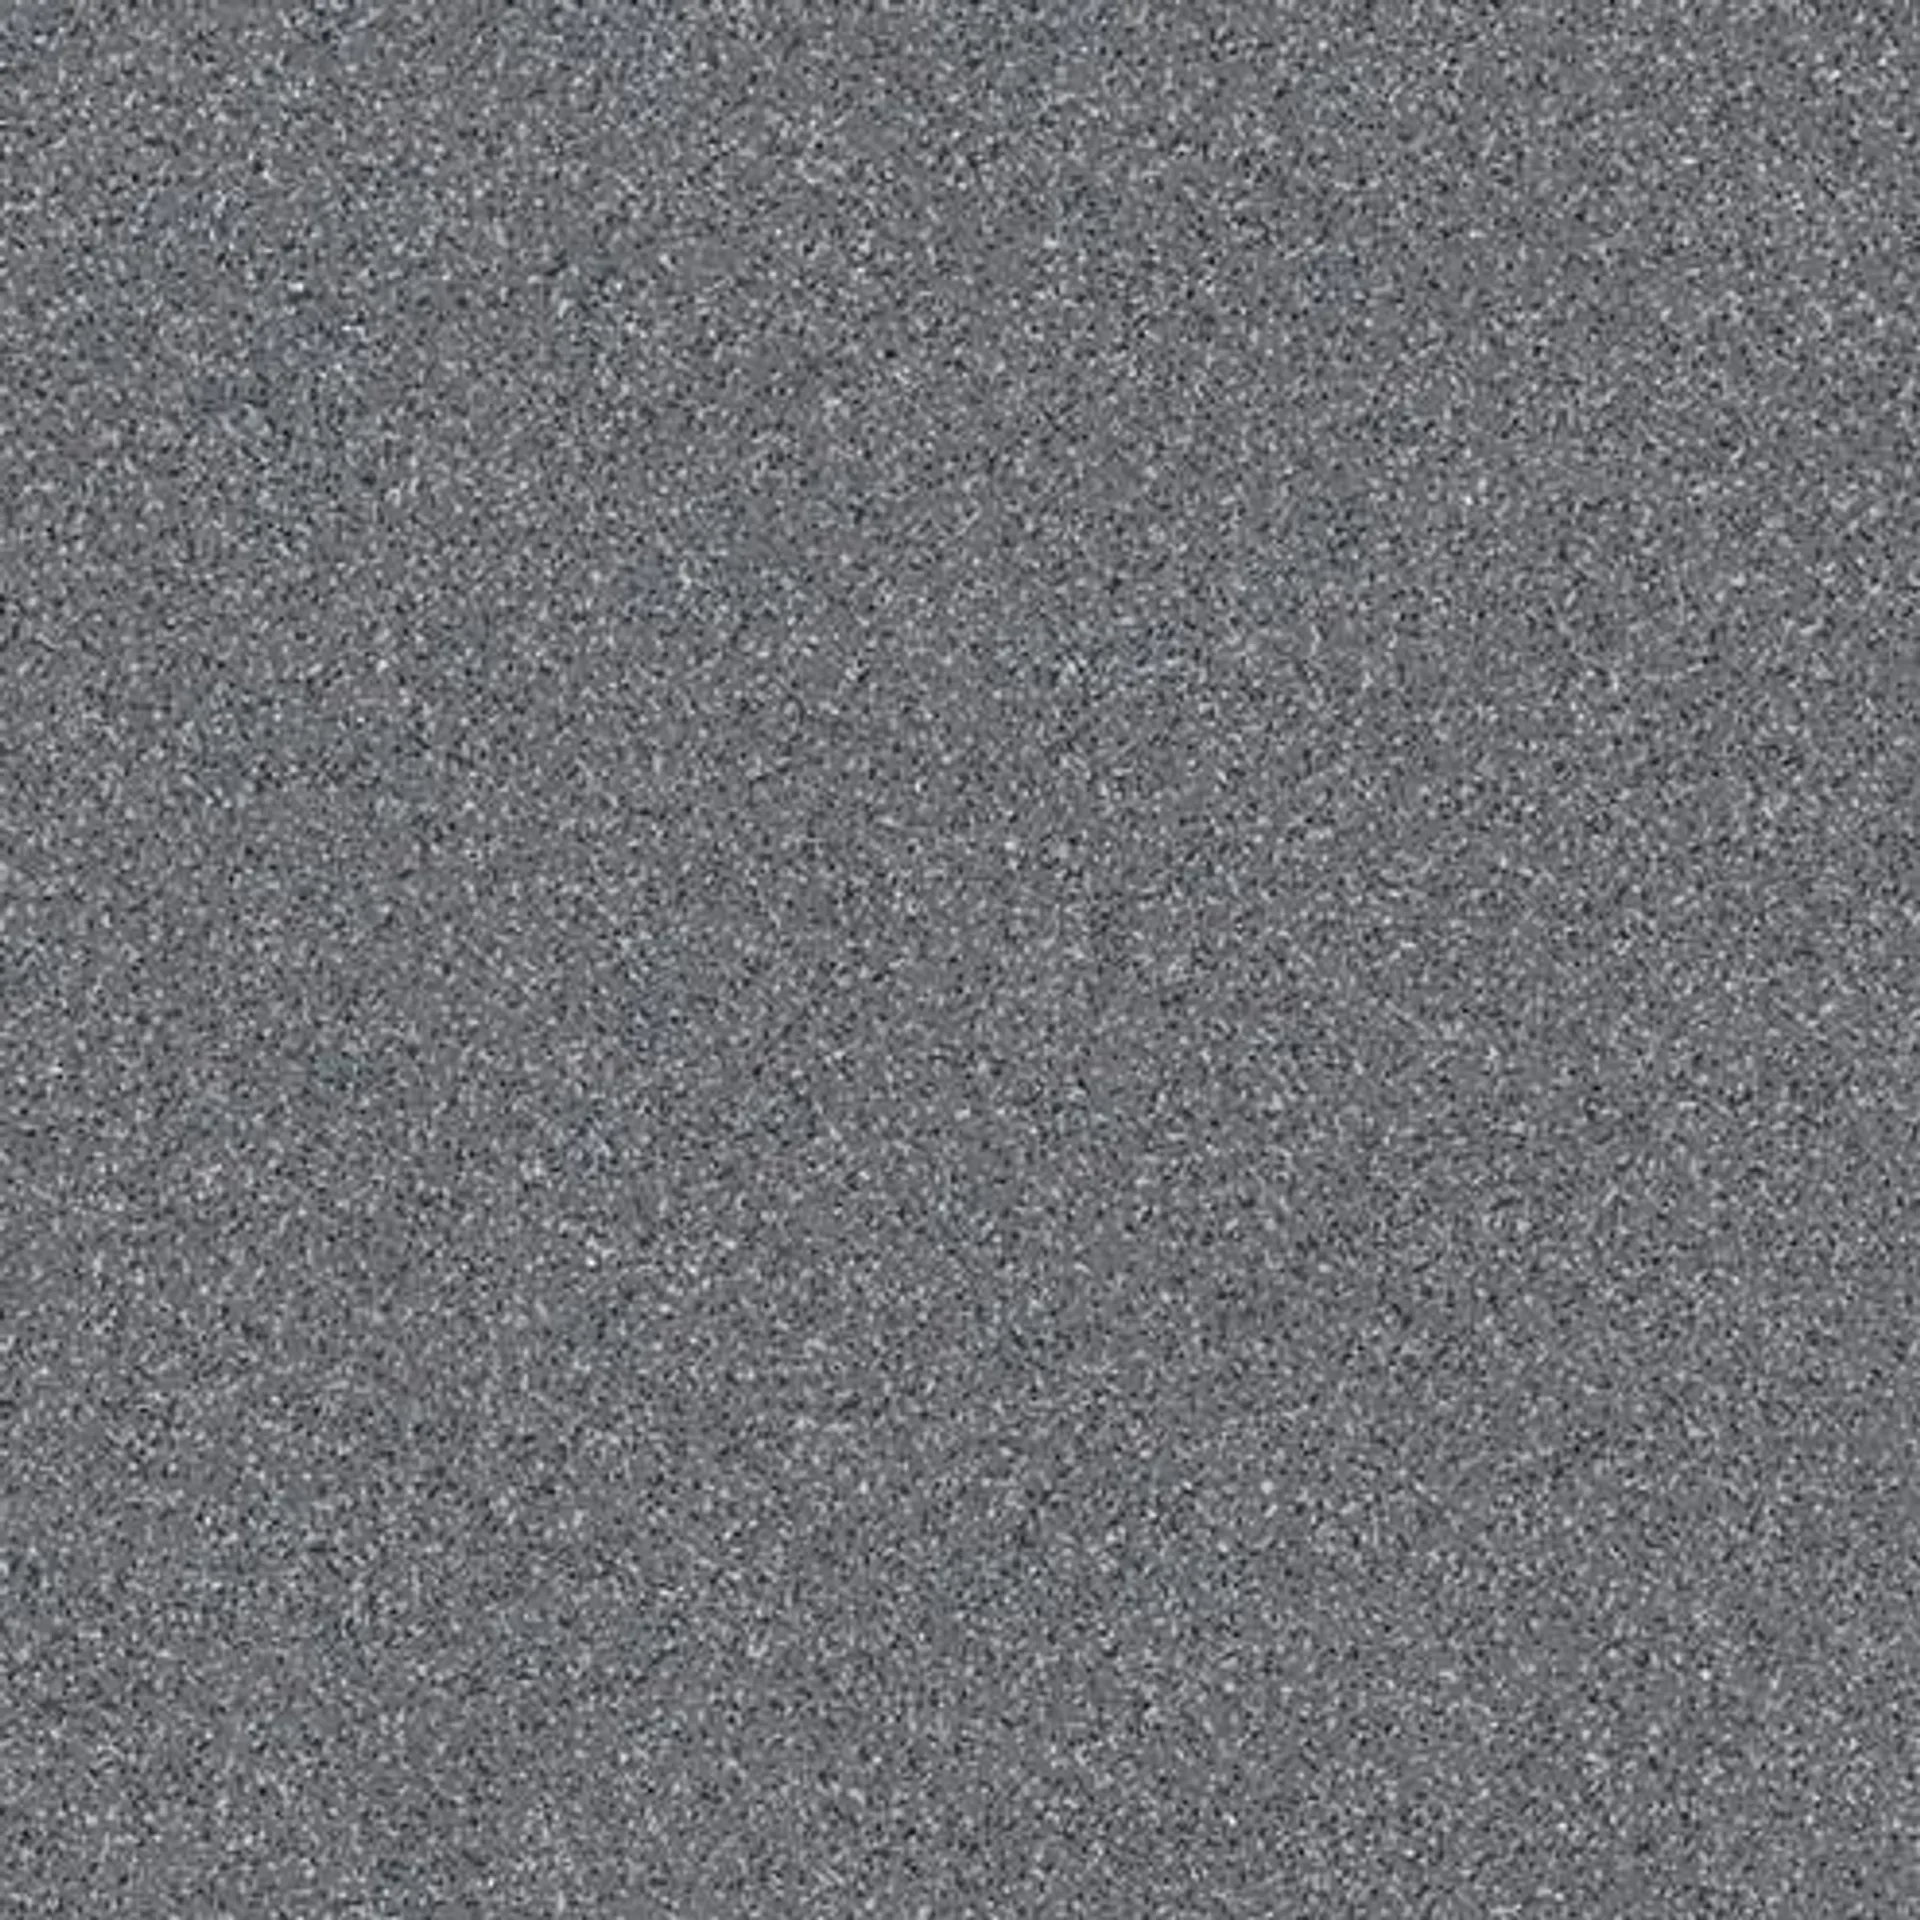 taurus granit nero tile 300 x 300 mm